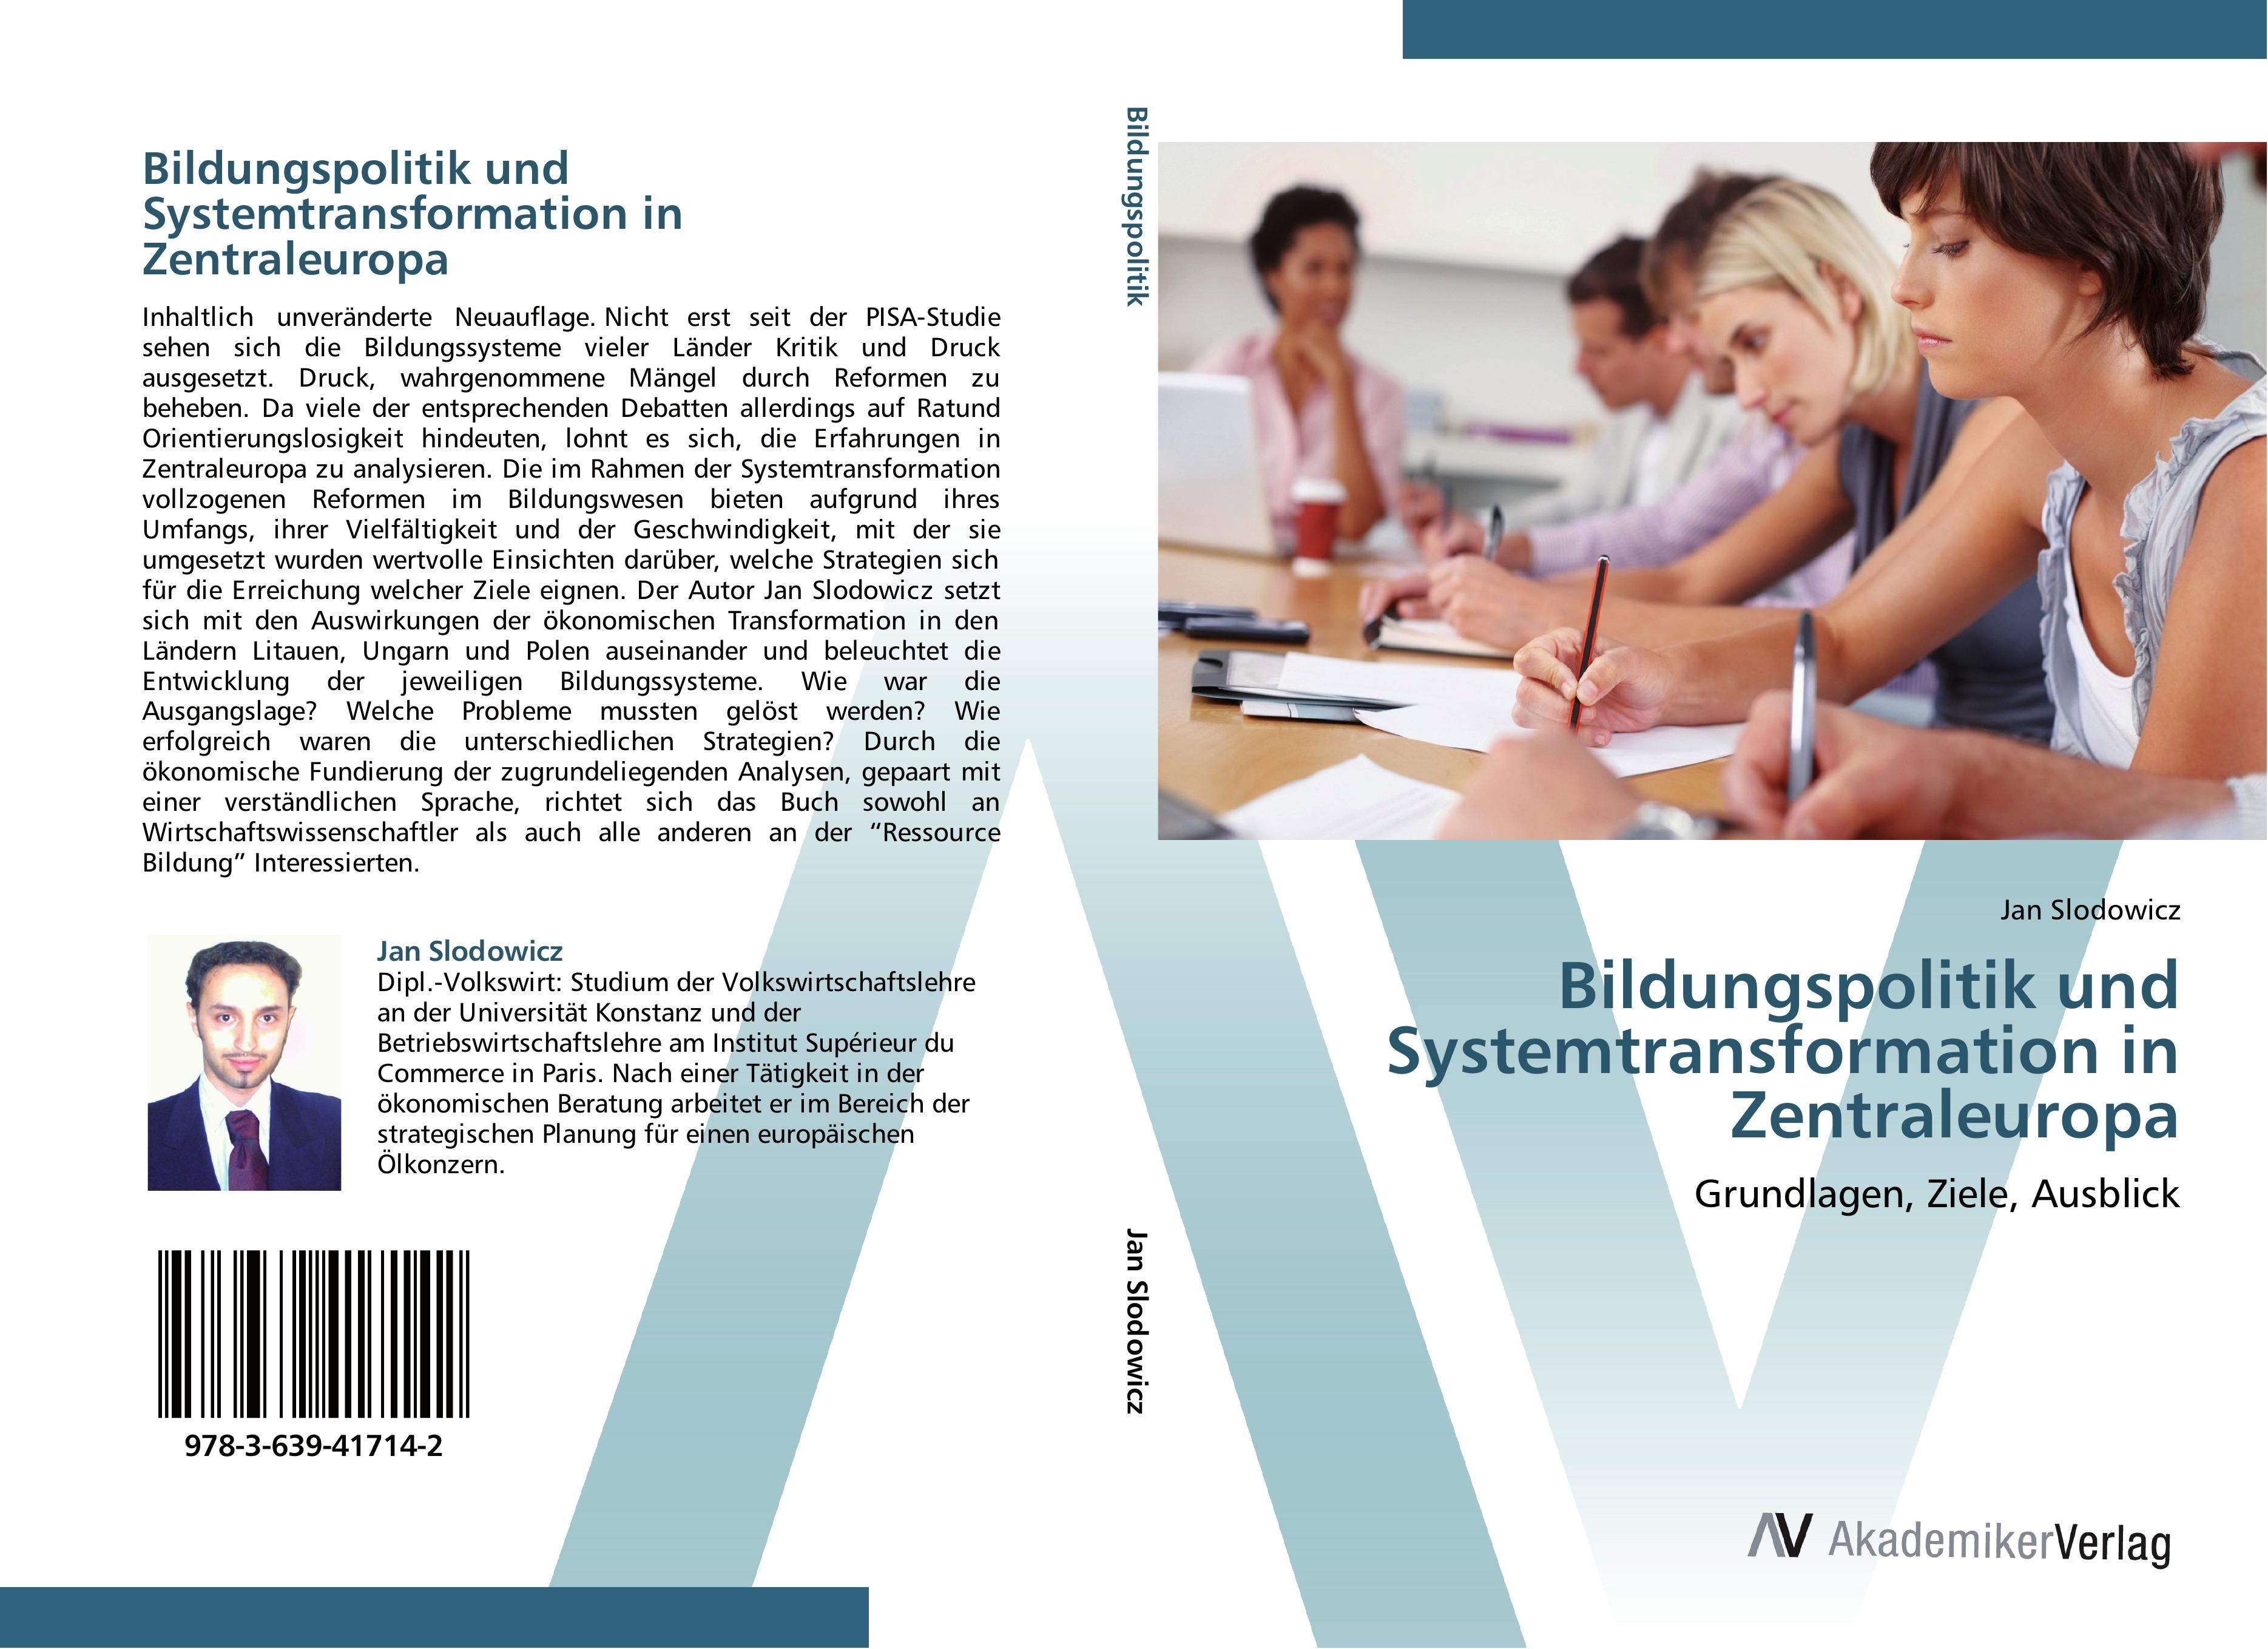 Bildungspolitik und Systemtransformation in Zentraleuropa - Jan Slodowicz